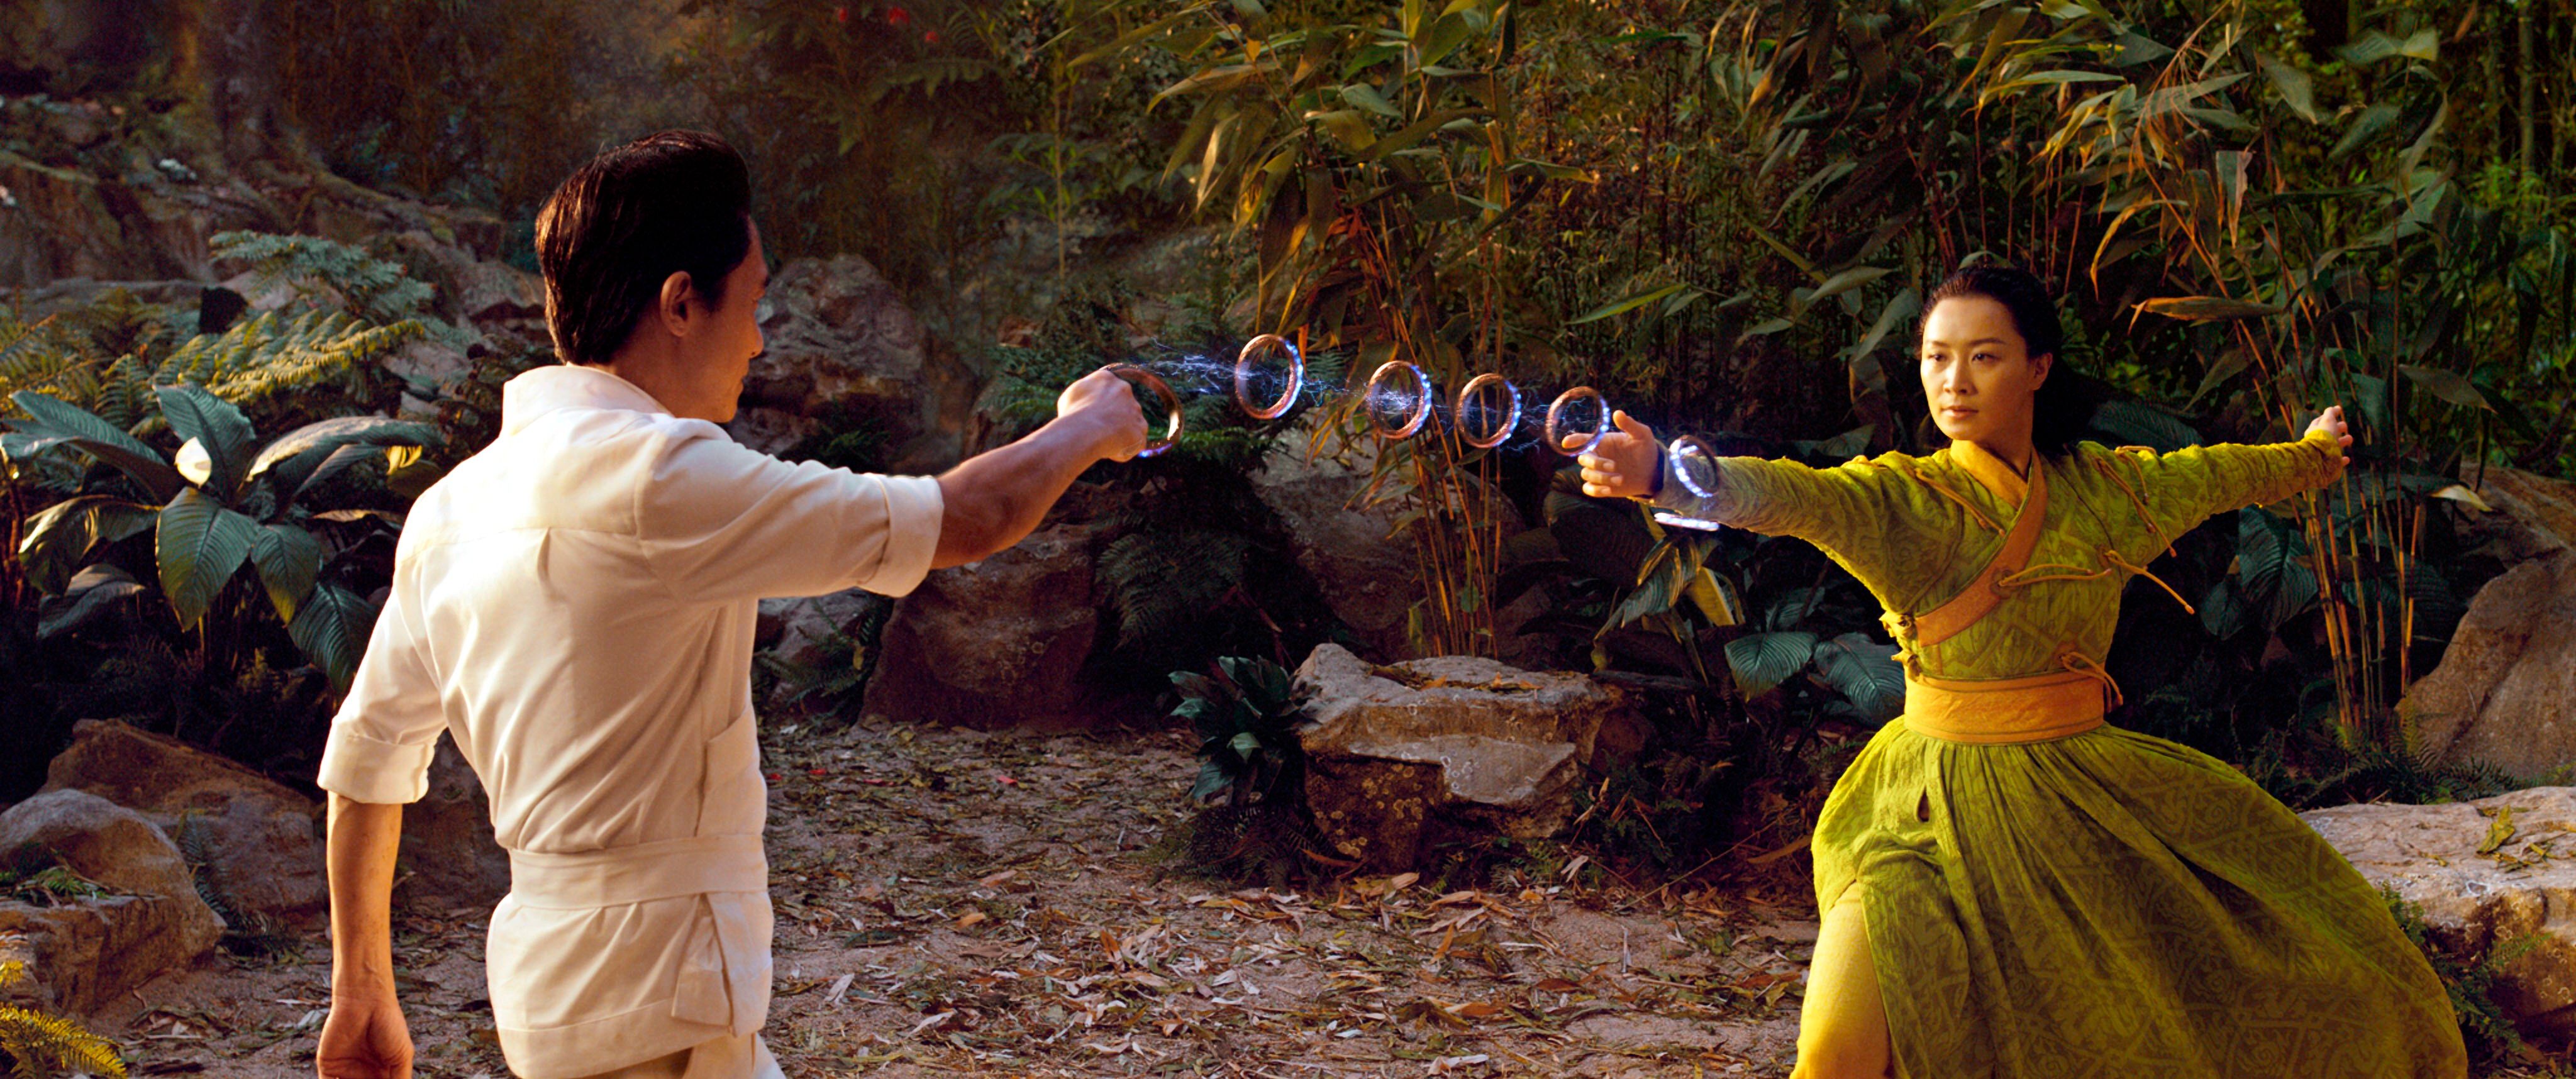 Shang-Chi La leggenda dei 10 anelli Recensione del Blu-ray 4K di Walt Disney Studios HE